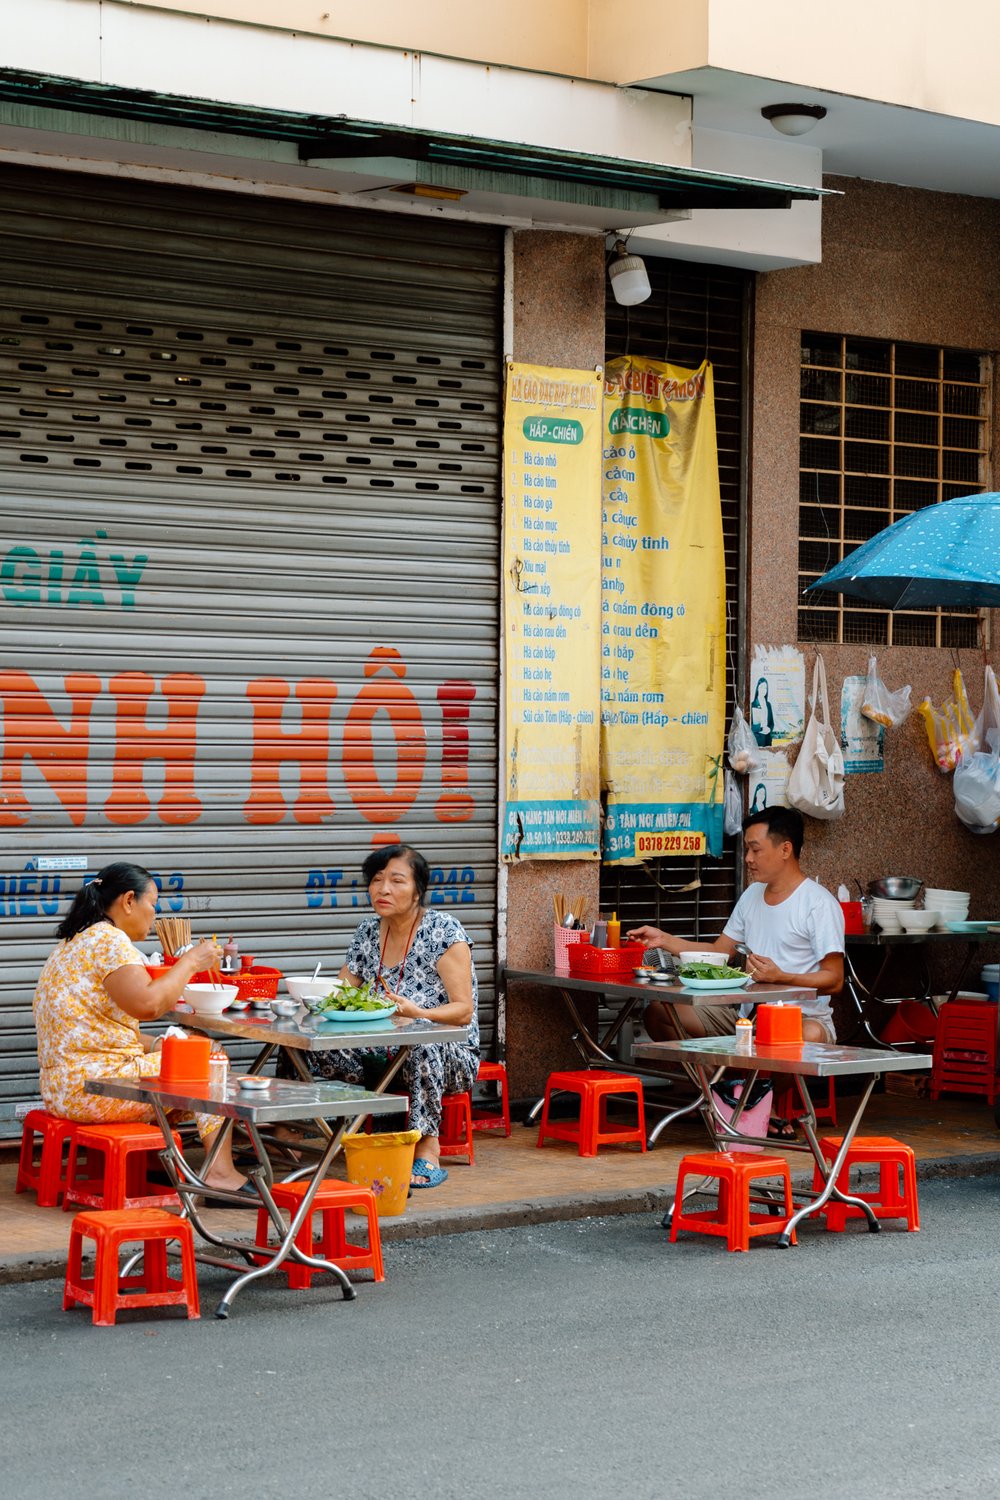 people eating street food in Saigon